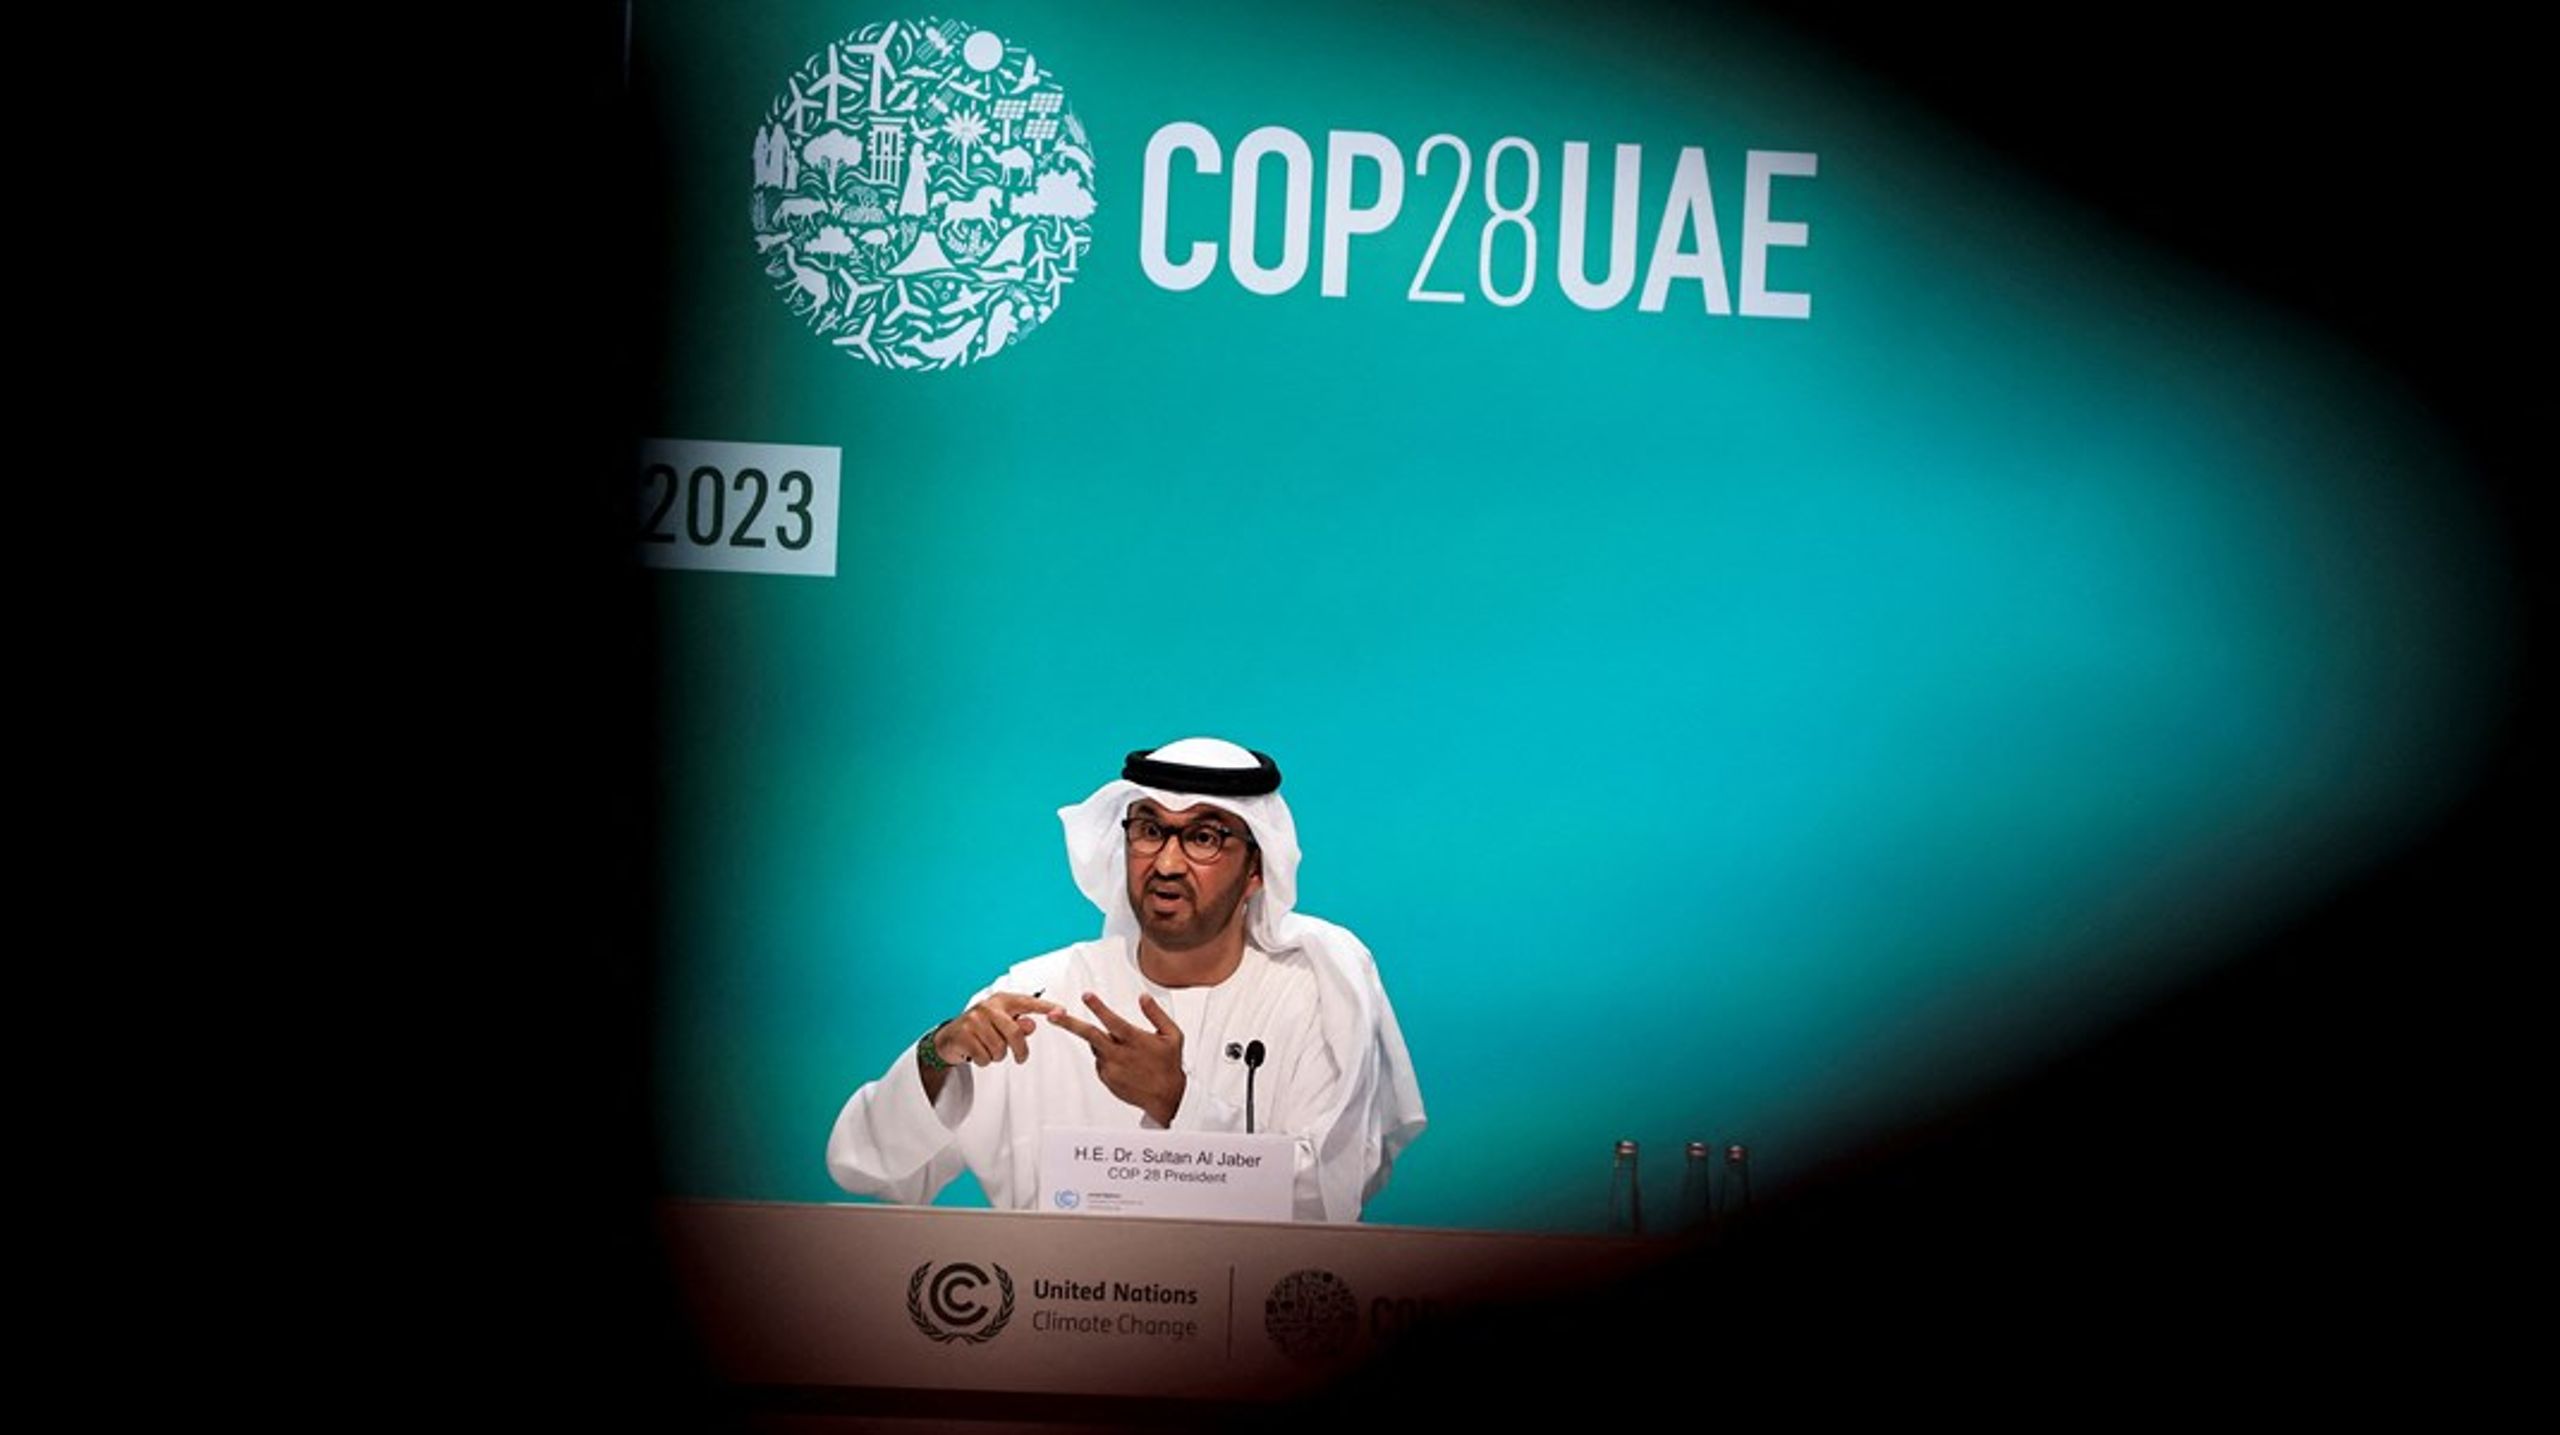 De forente arabiske emirater er vertskap for COP28, det 28. internasjonale klimatoppmøtet under FNs klimakonvensjon. Sultan Ahmad Al-Jaber leder forhandlingene.